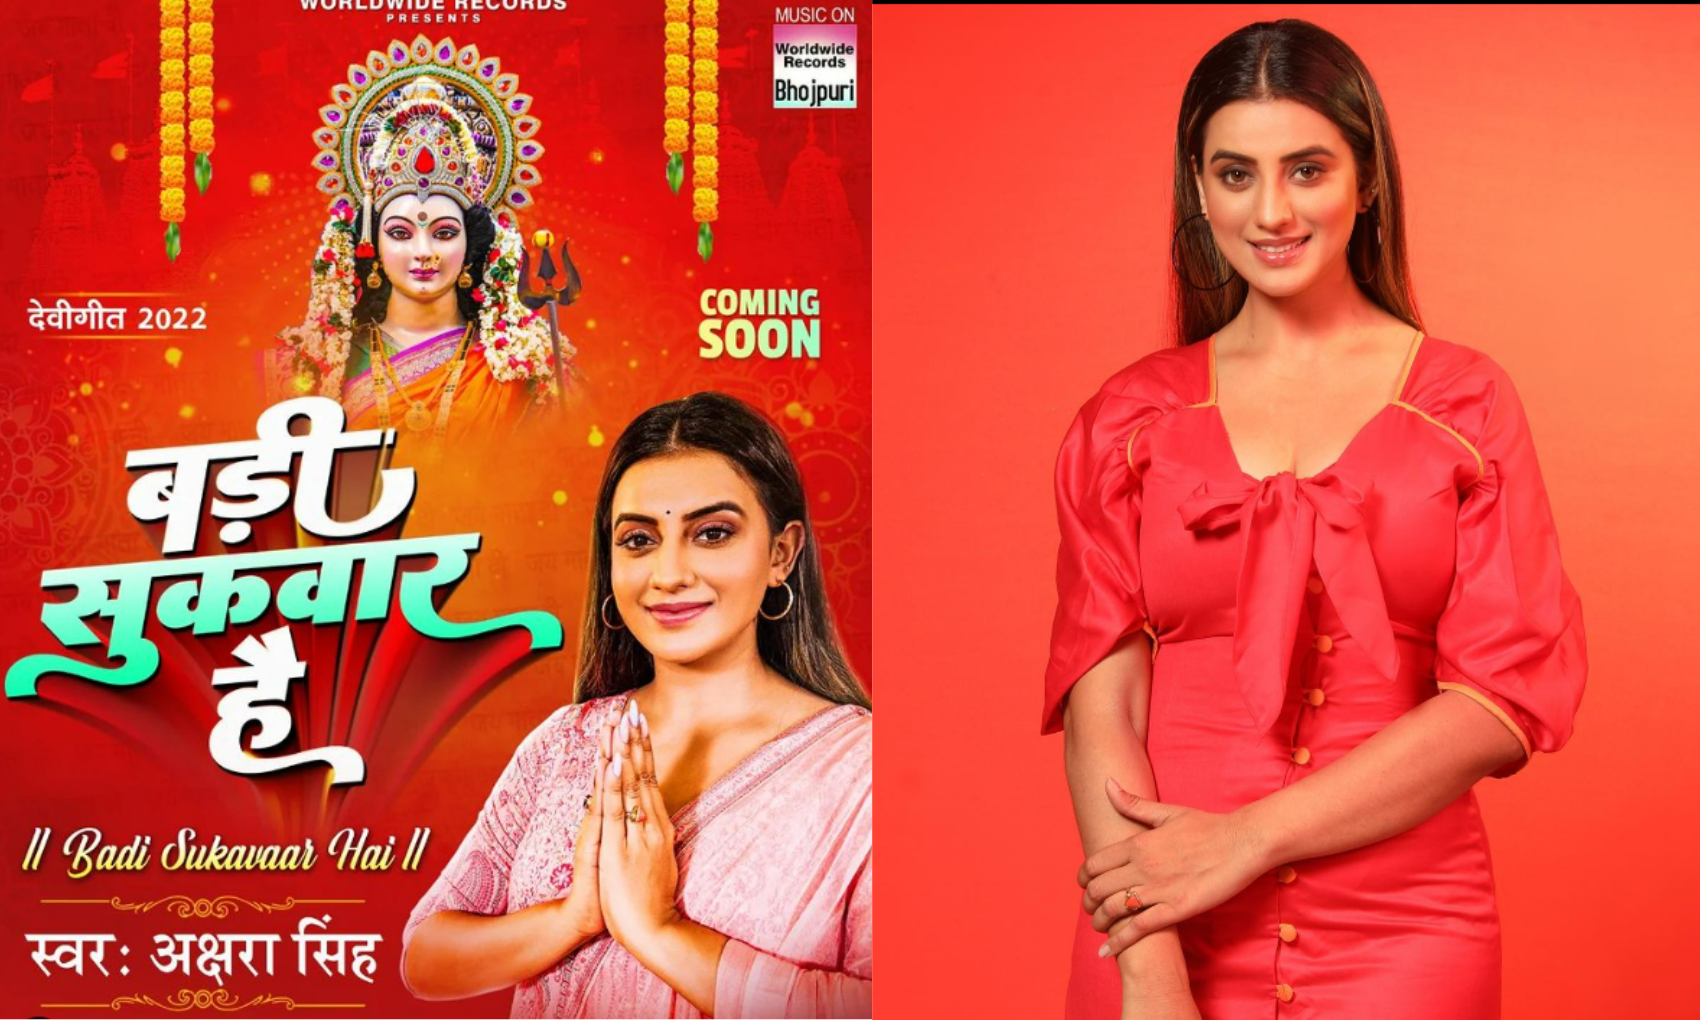 Bhojpuri: अक्षरा सिंह का नया भक्ति गाना ‘बड़ी सुकवार है’ जल्द होगा रिलीज, सामने आया फर्स्ट लुक पोस्टर!